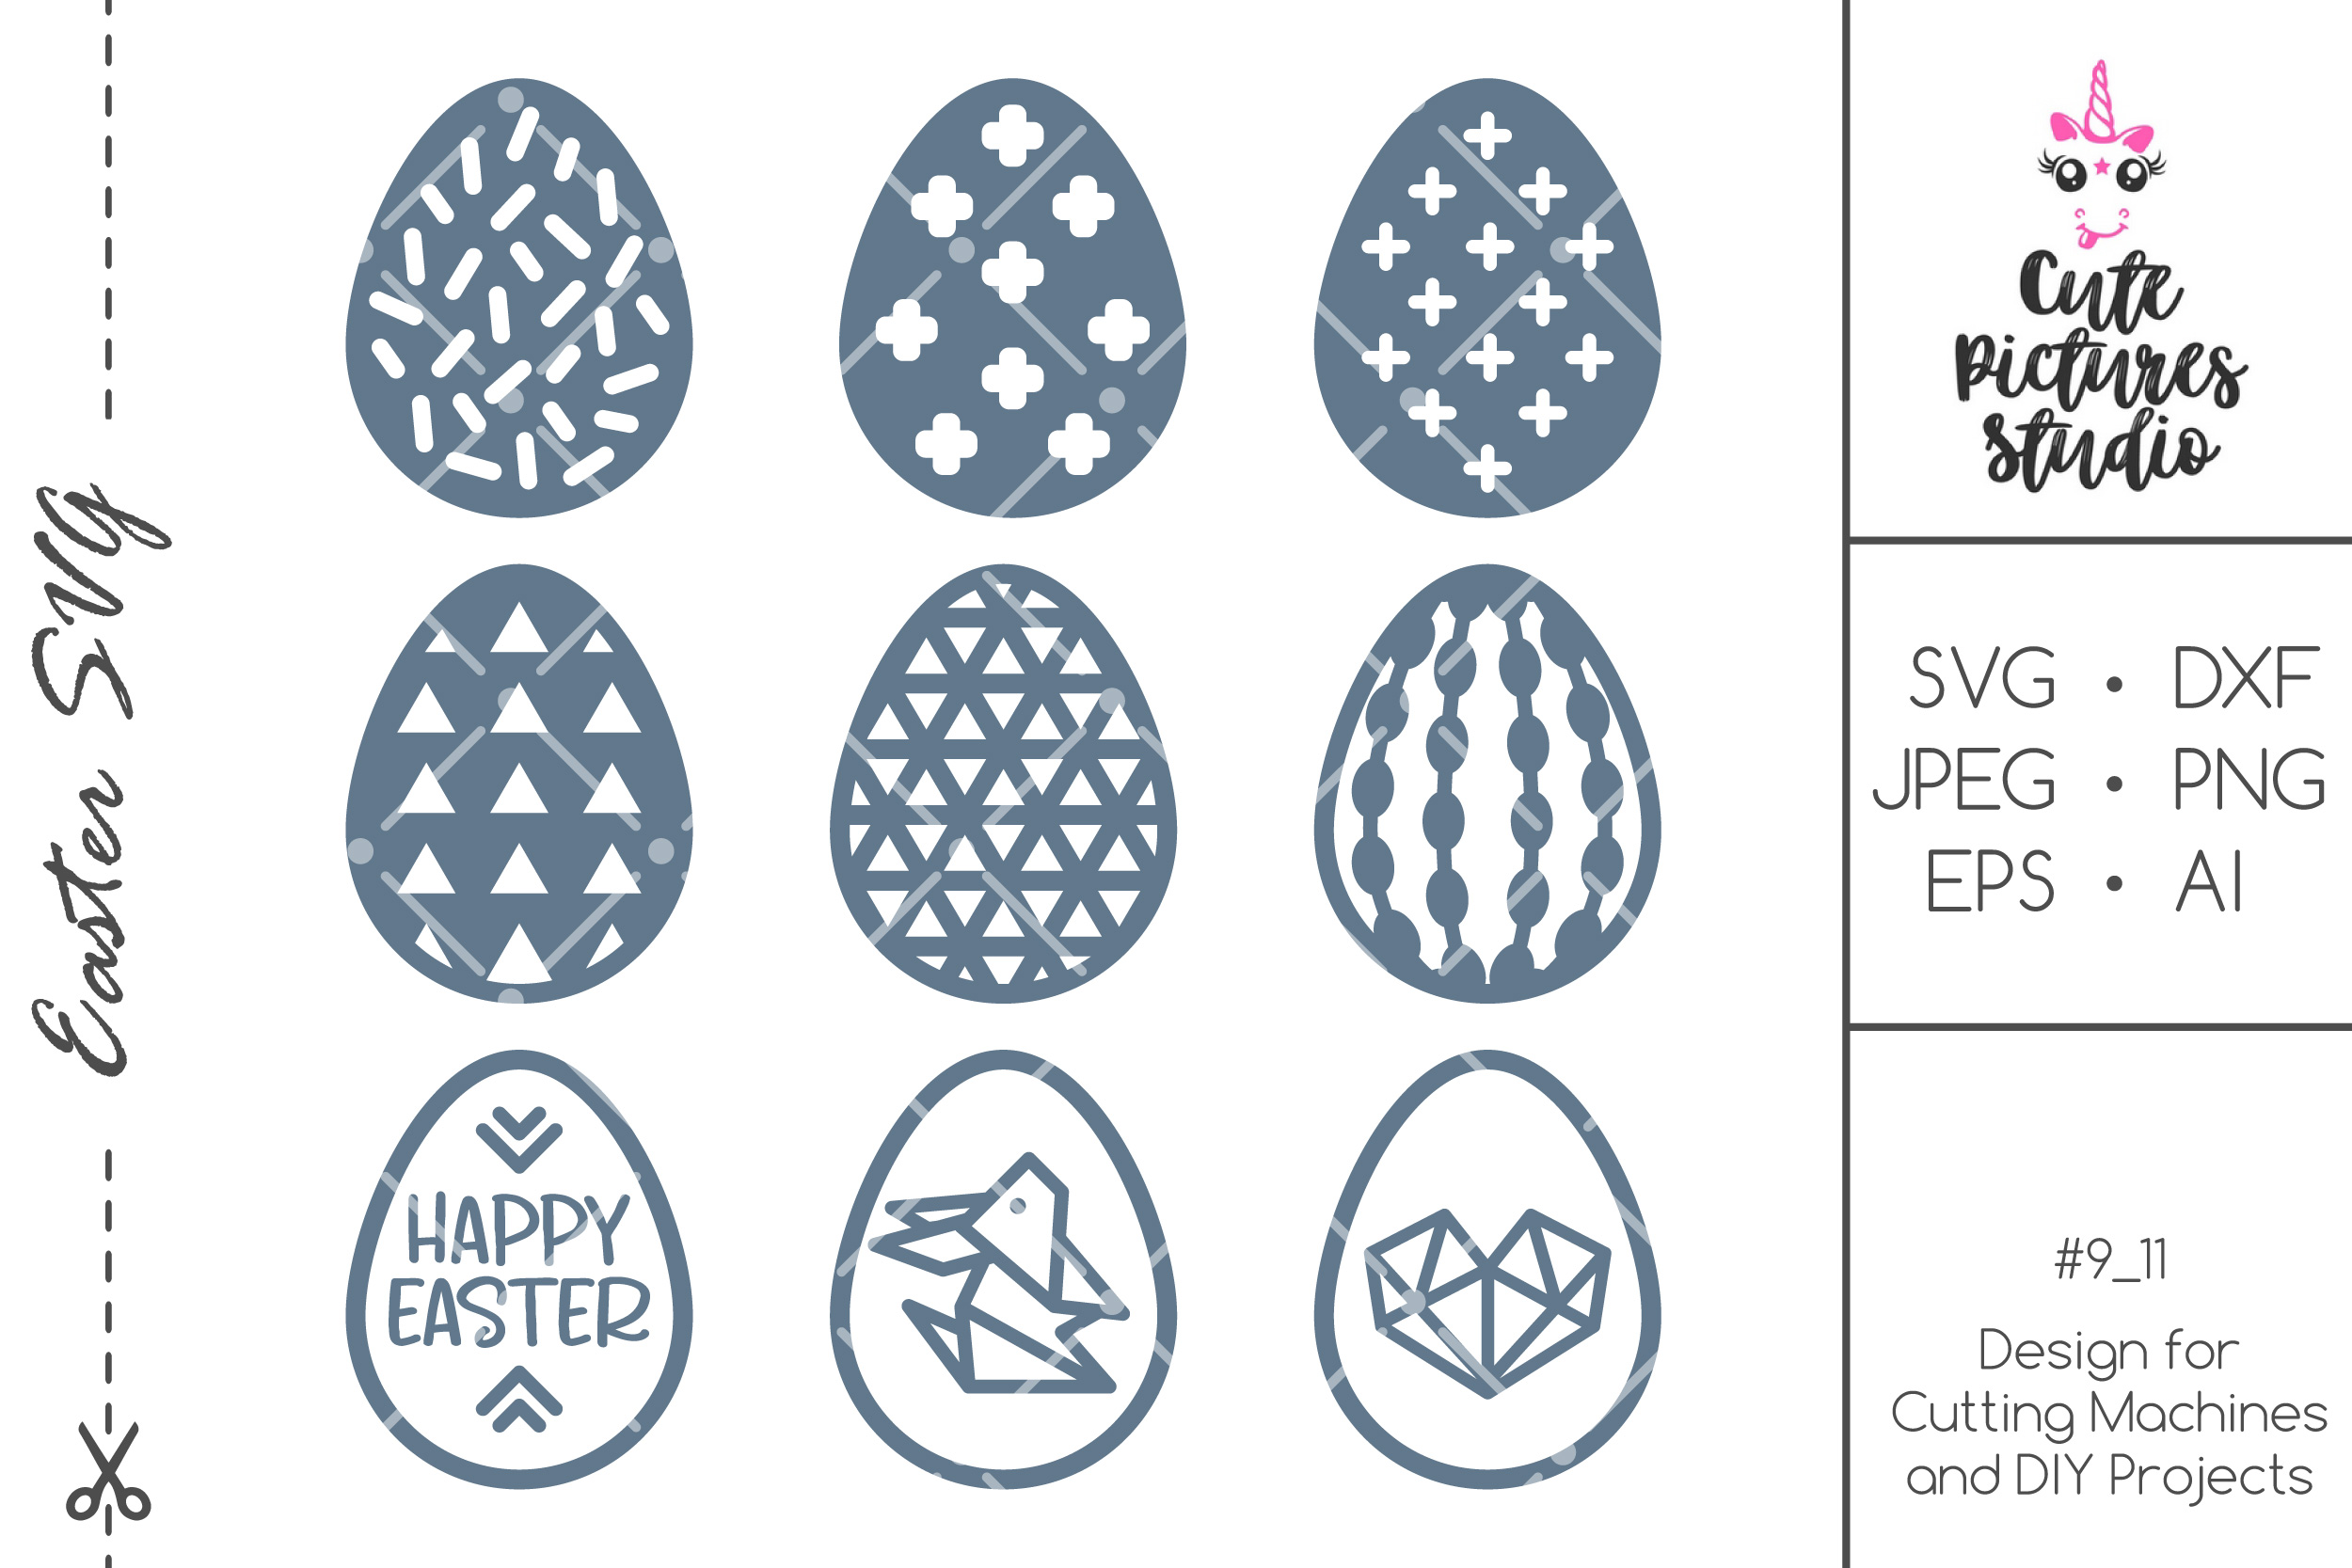 Happy Easter egg SVG cut file bundle, Scandi egg SVG clipart (468403